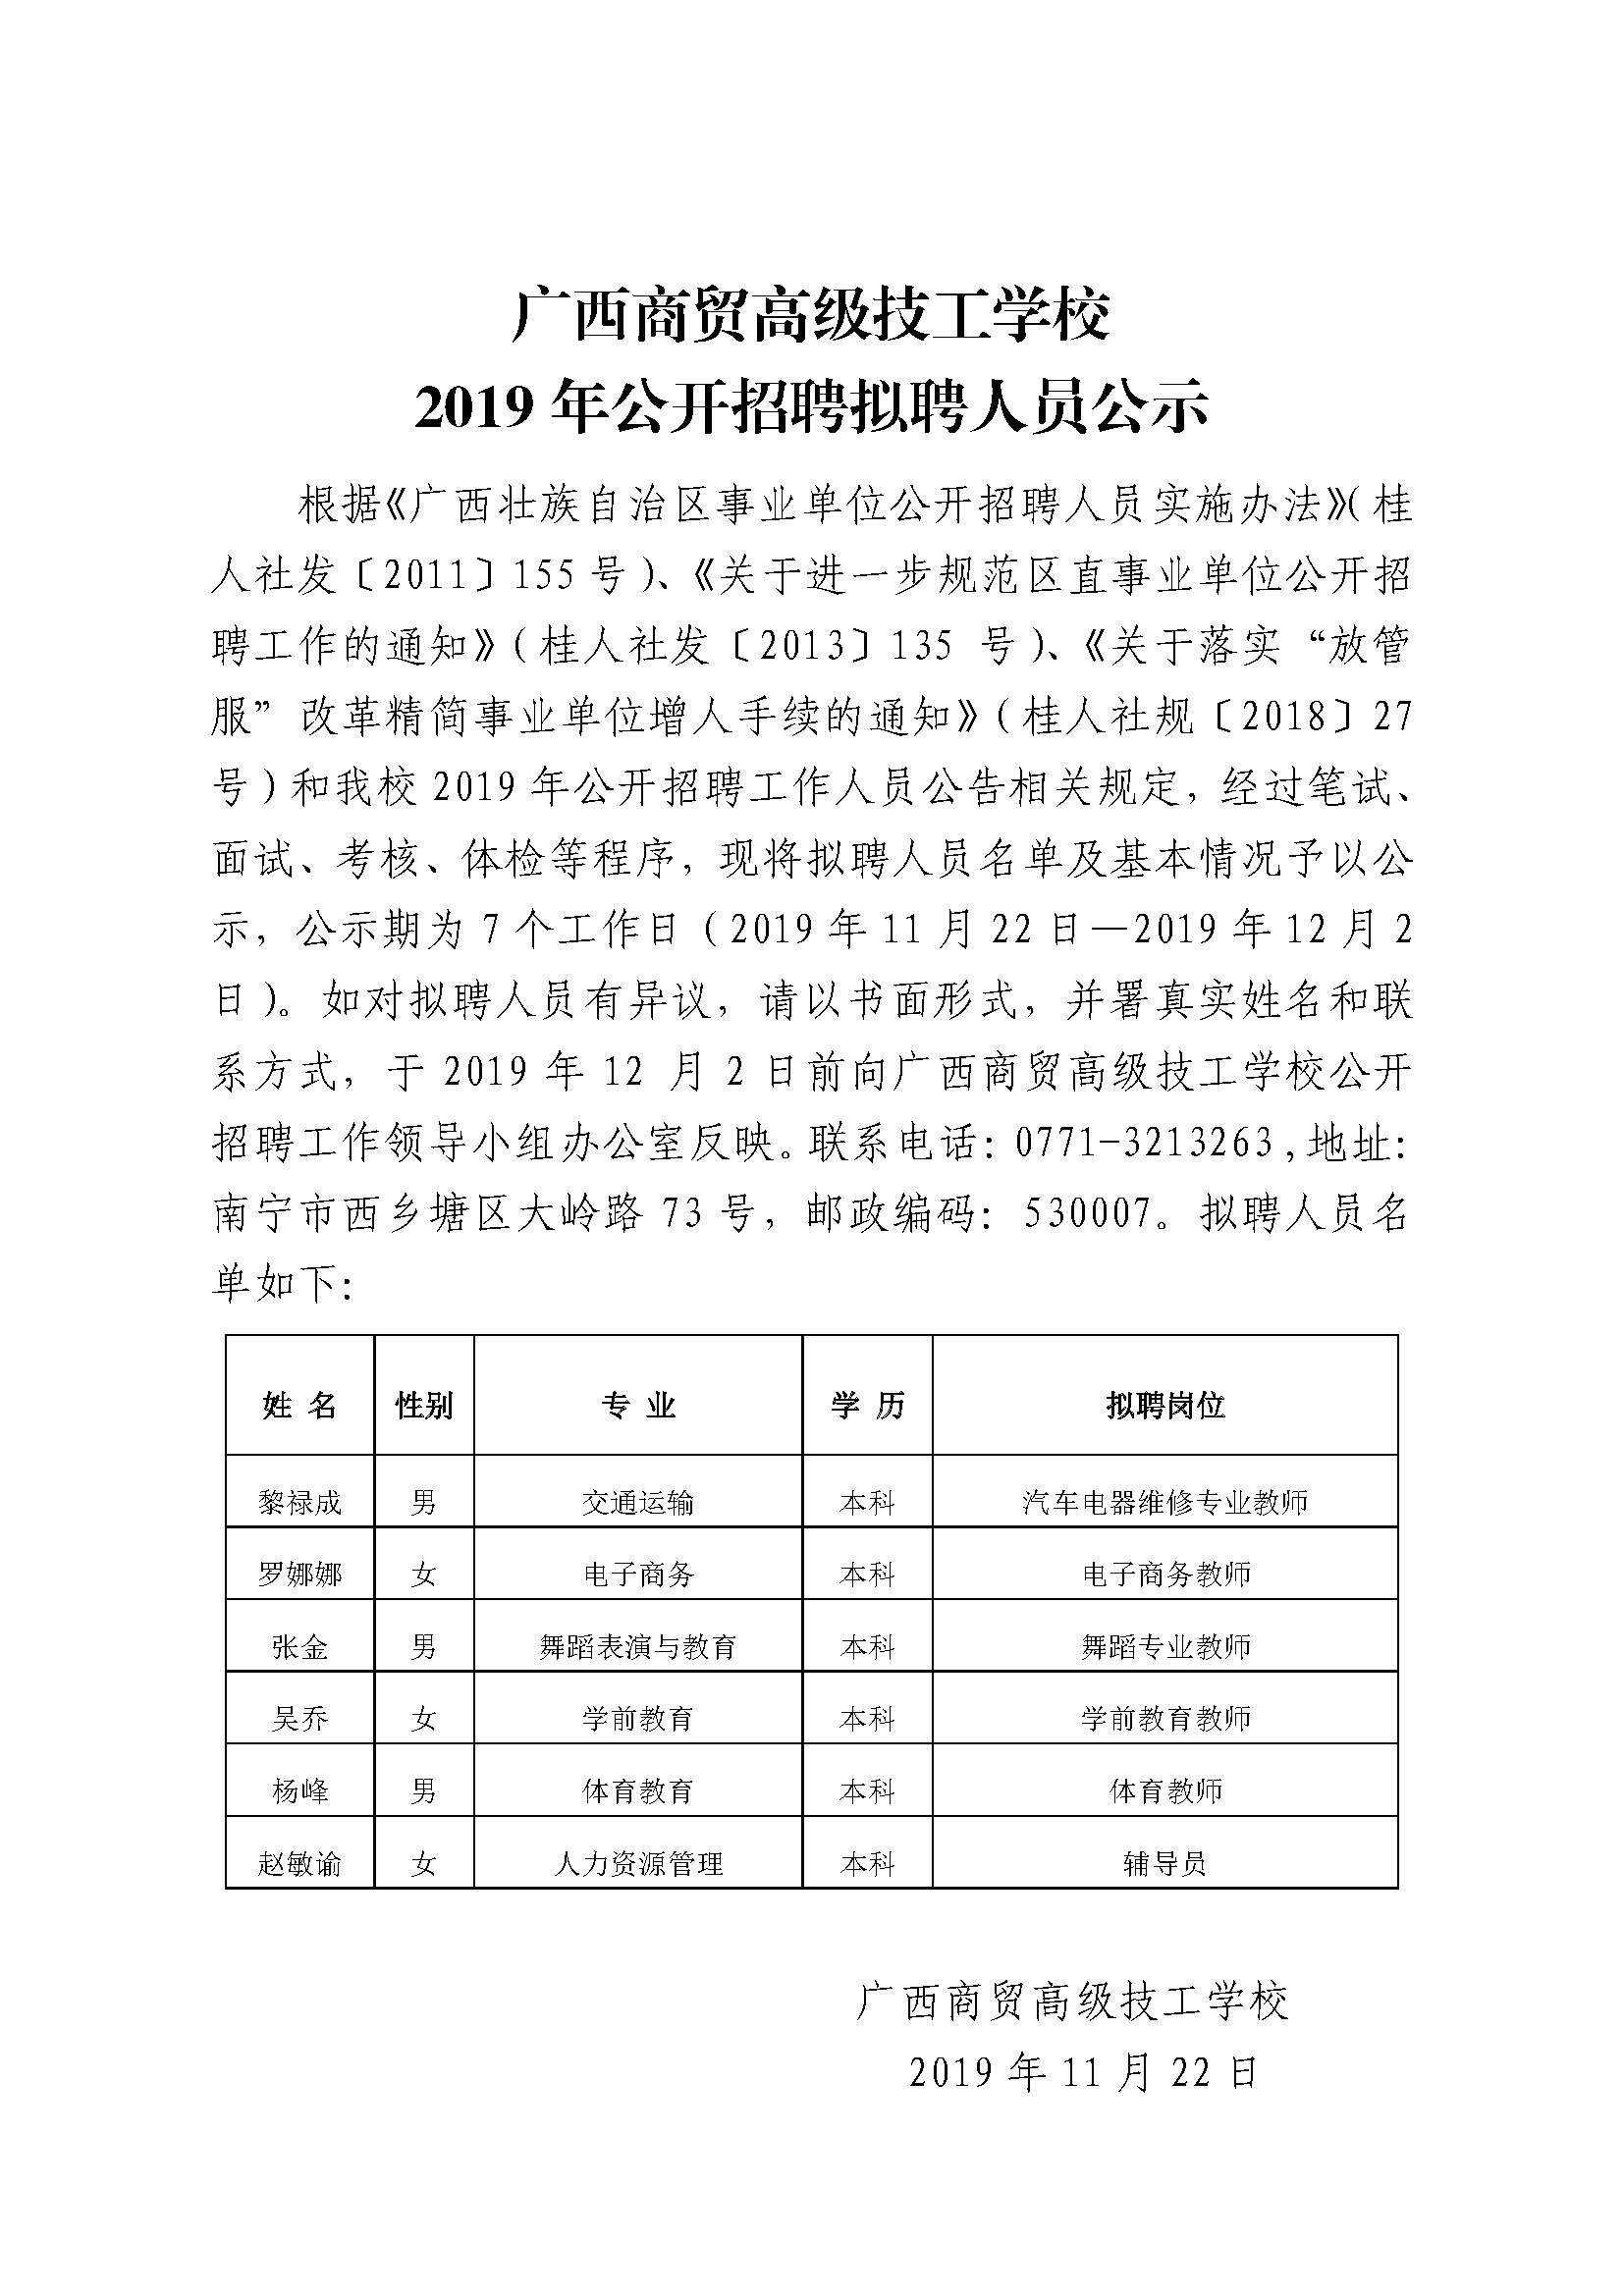 广西商贸高级技工学校 2019年公开招聘拟聘人员公示(定稿）.jpg